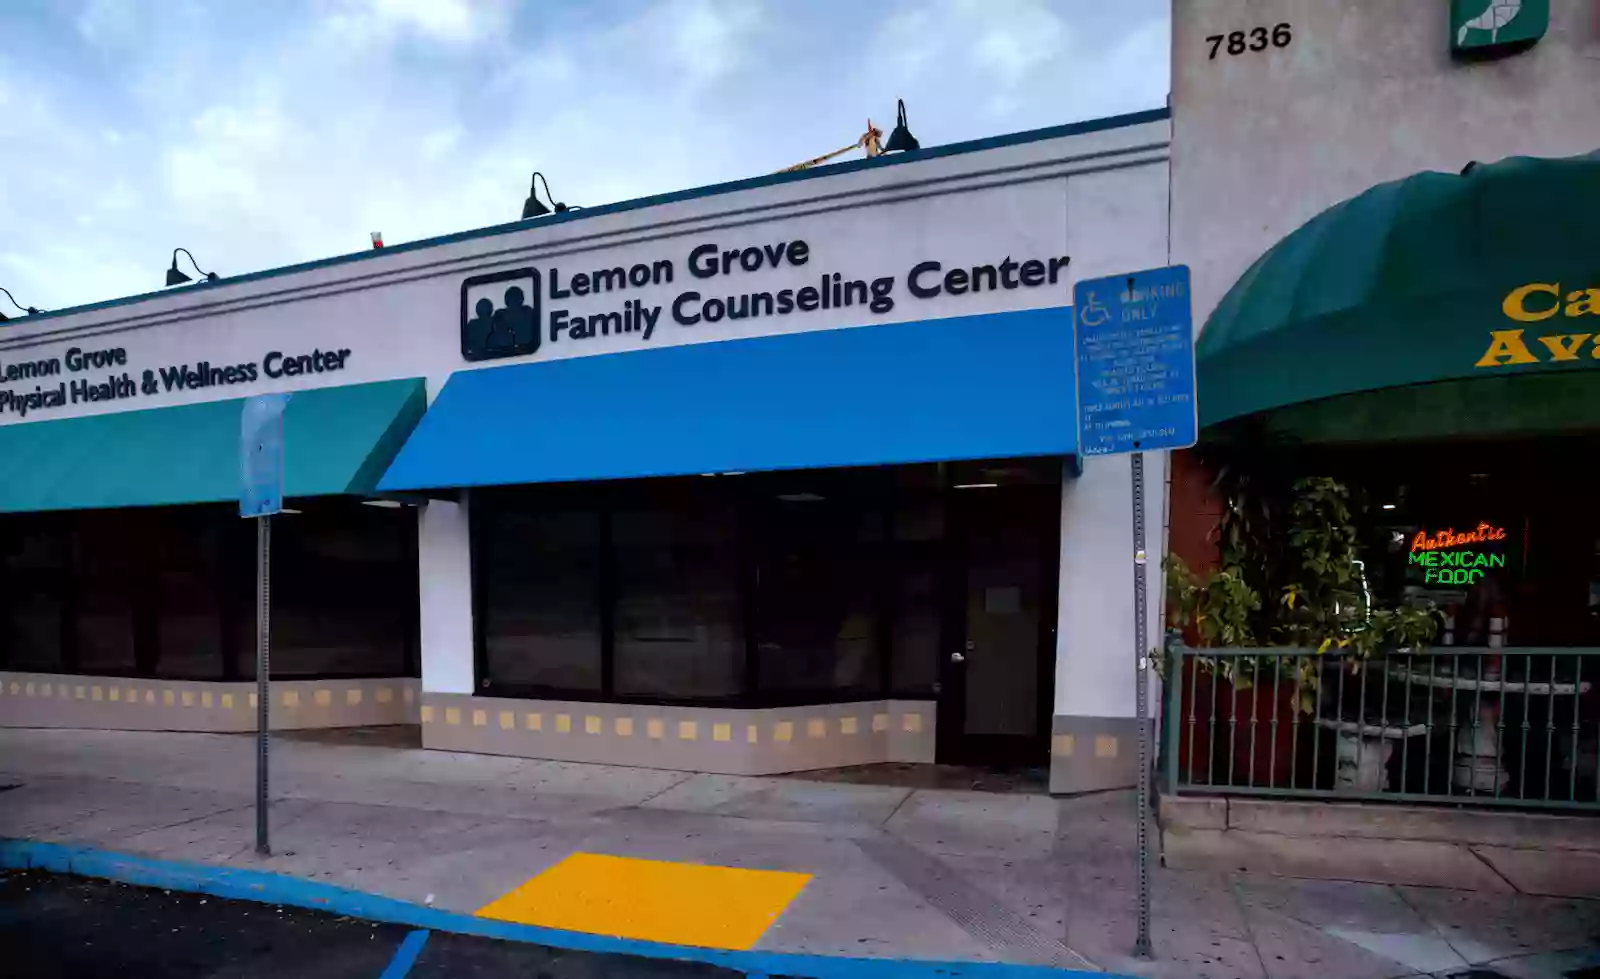 Lemon Grove Family Counseling Center